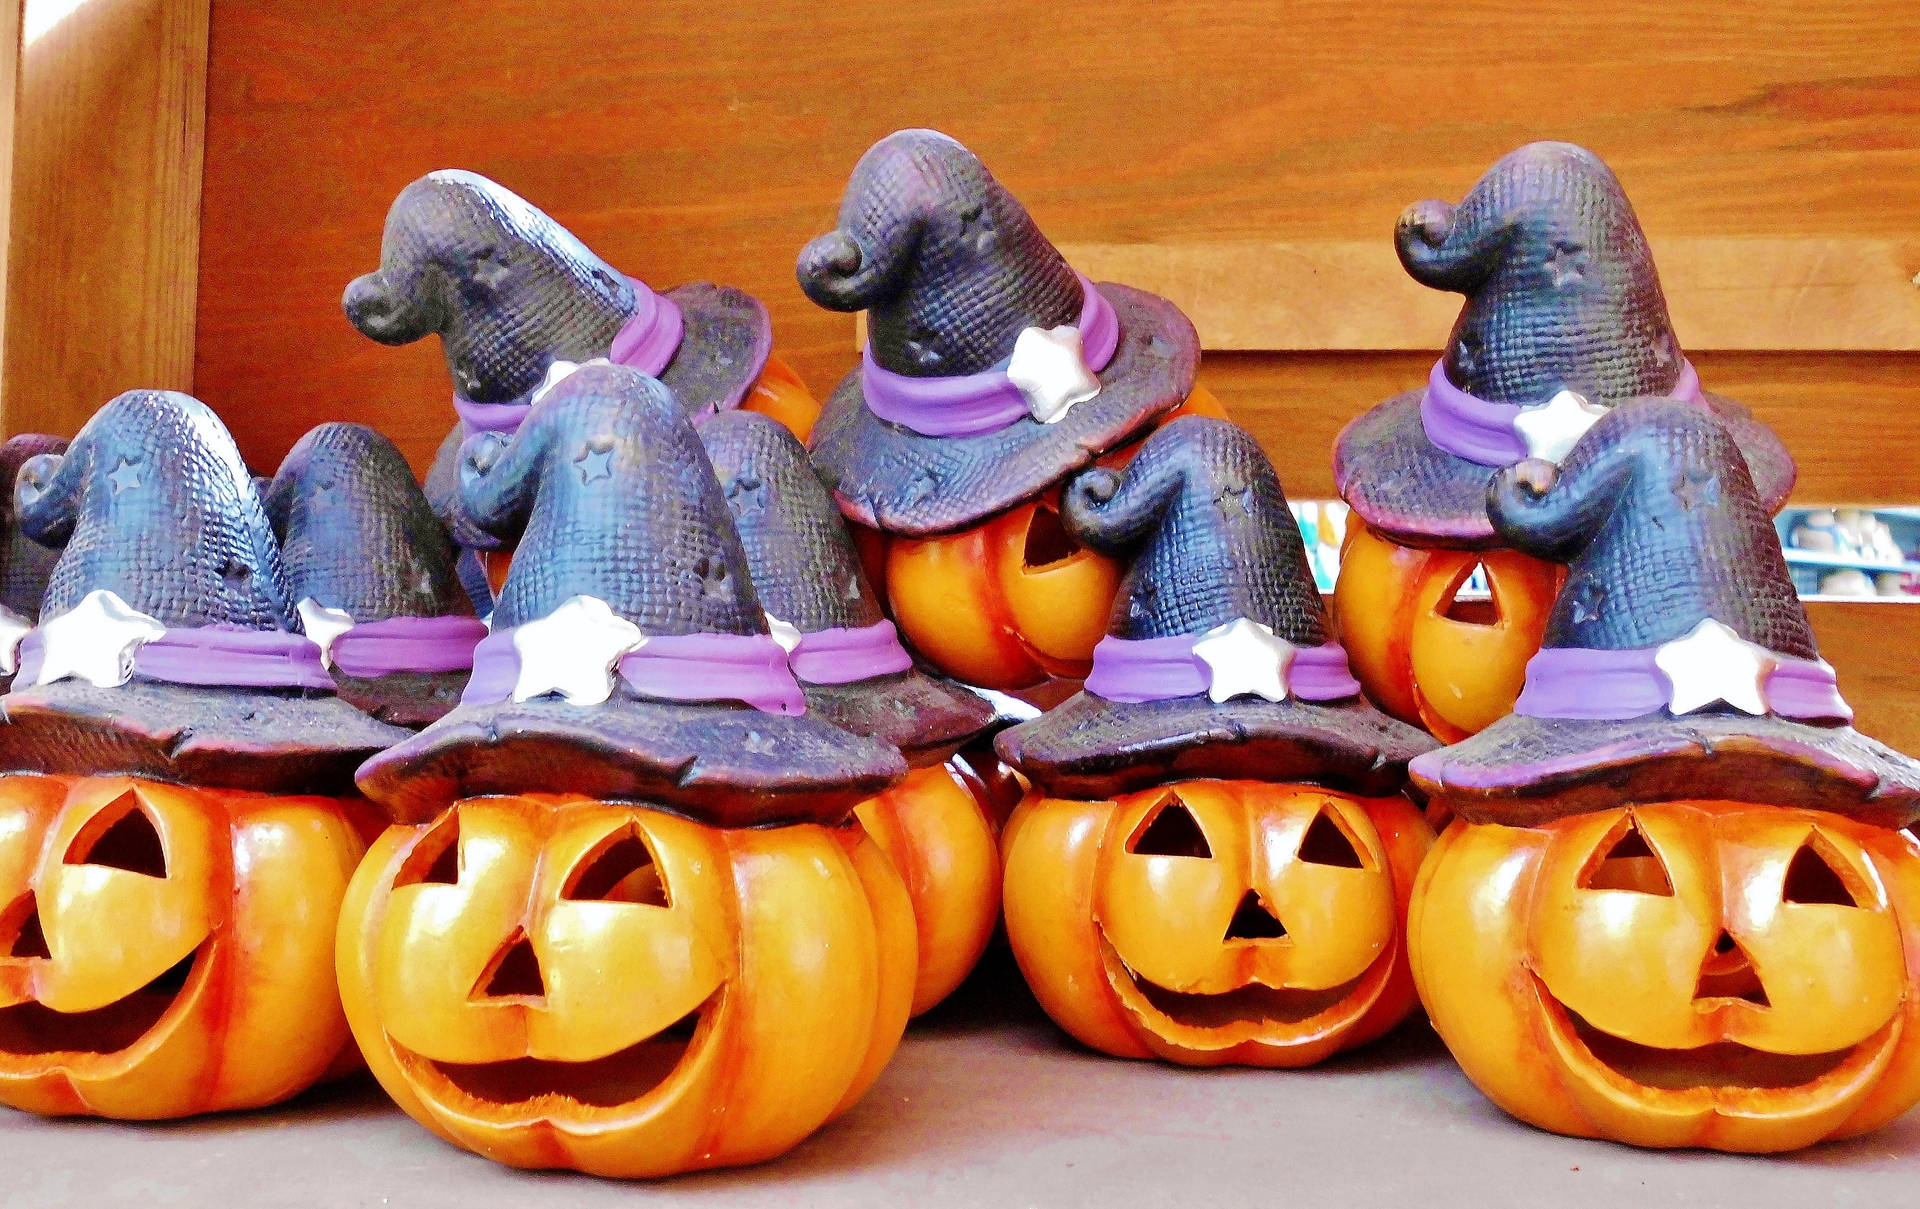 Smiling Pumpkins Figurines Halloween